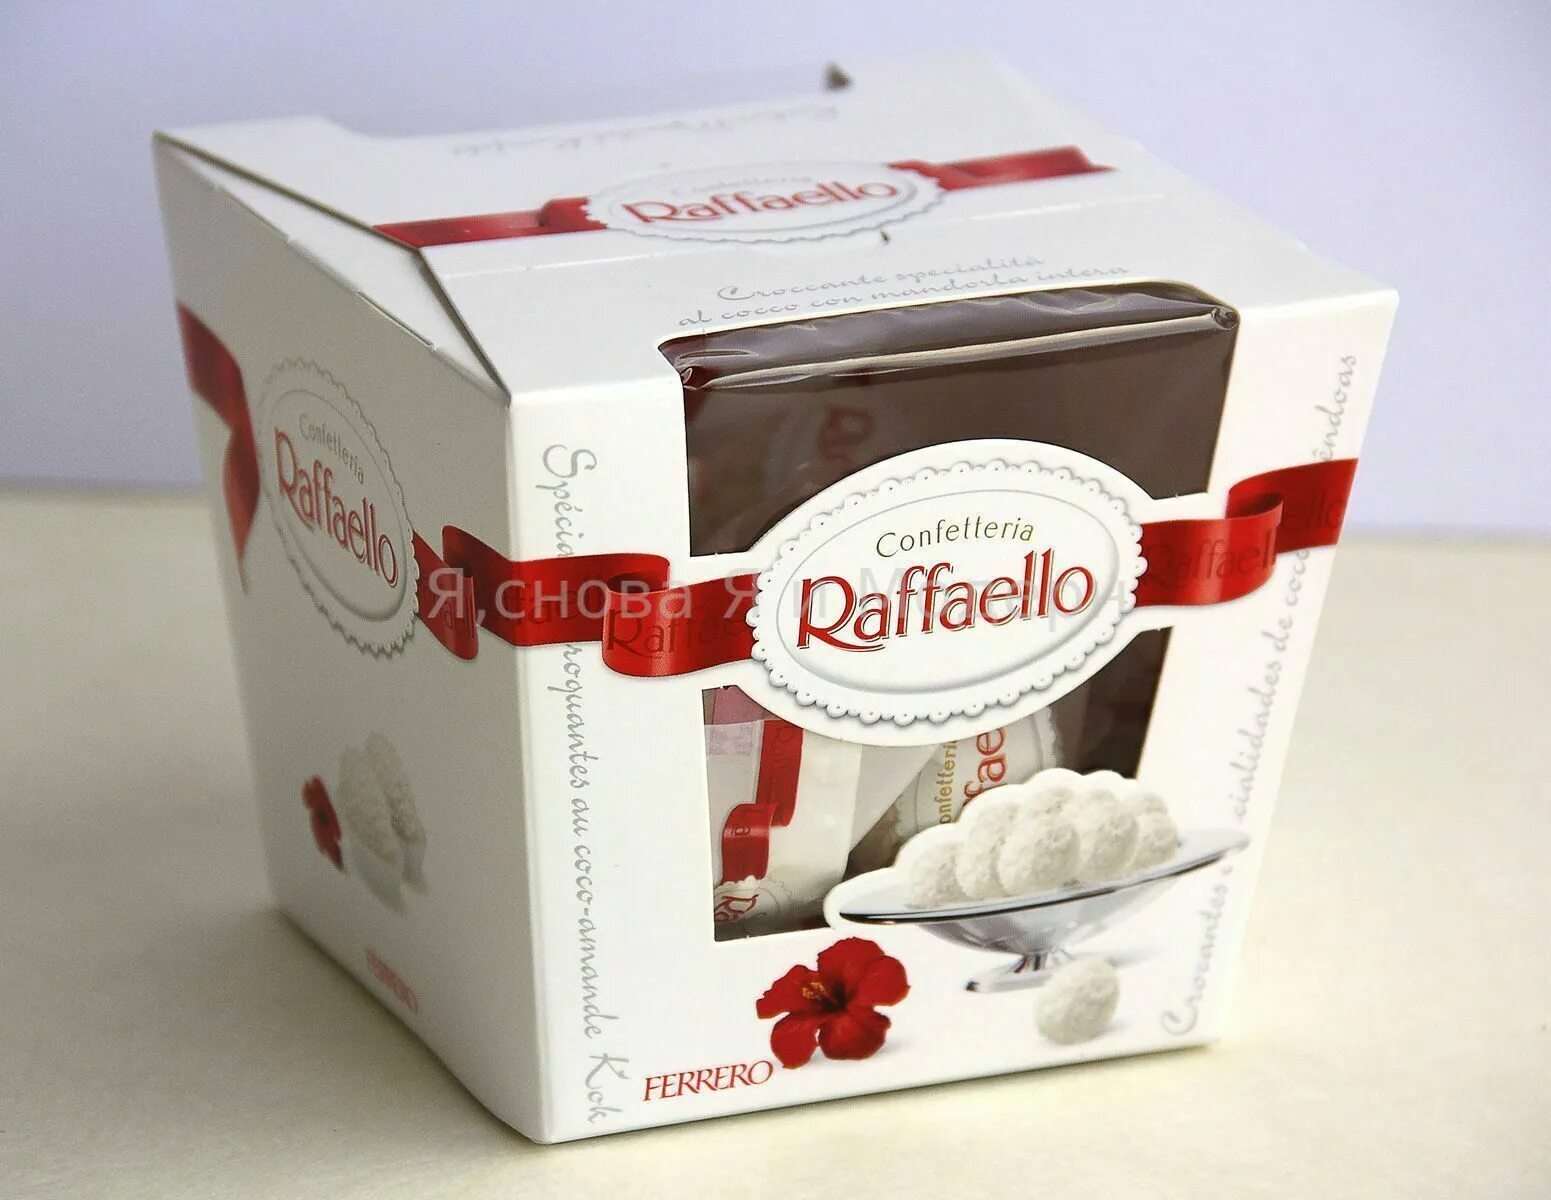 Рафаэлло сколько штук в коробке 150. Конфеты Раффаэлло т9 90 г коробка. Конфеты Raffaello коробка 150гр. Raffaello в коробке. Конфеты Раффаэлло (т15) 150 г.